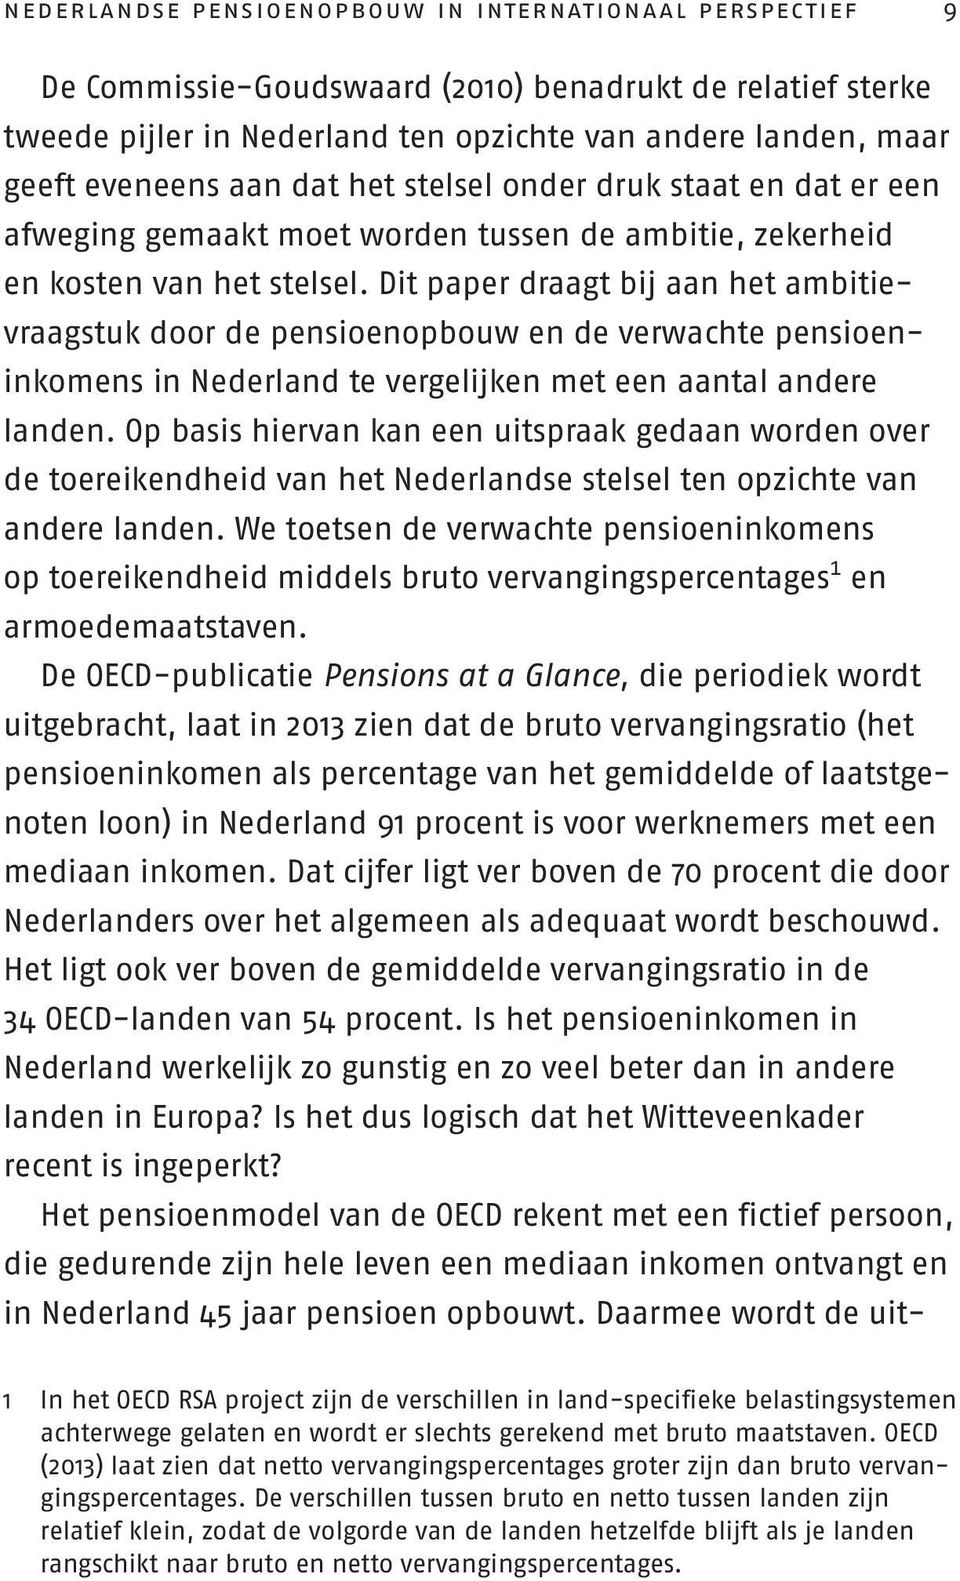 Dit paper draagt bij aan het ambitievraagstuk door de pensioenopbouw en de verwachte pensioeninkomens in Nederland te vergelijken met een aantal andere landen.